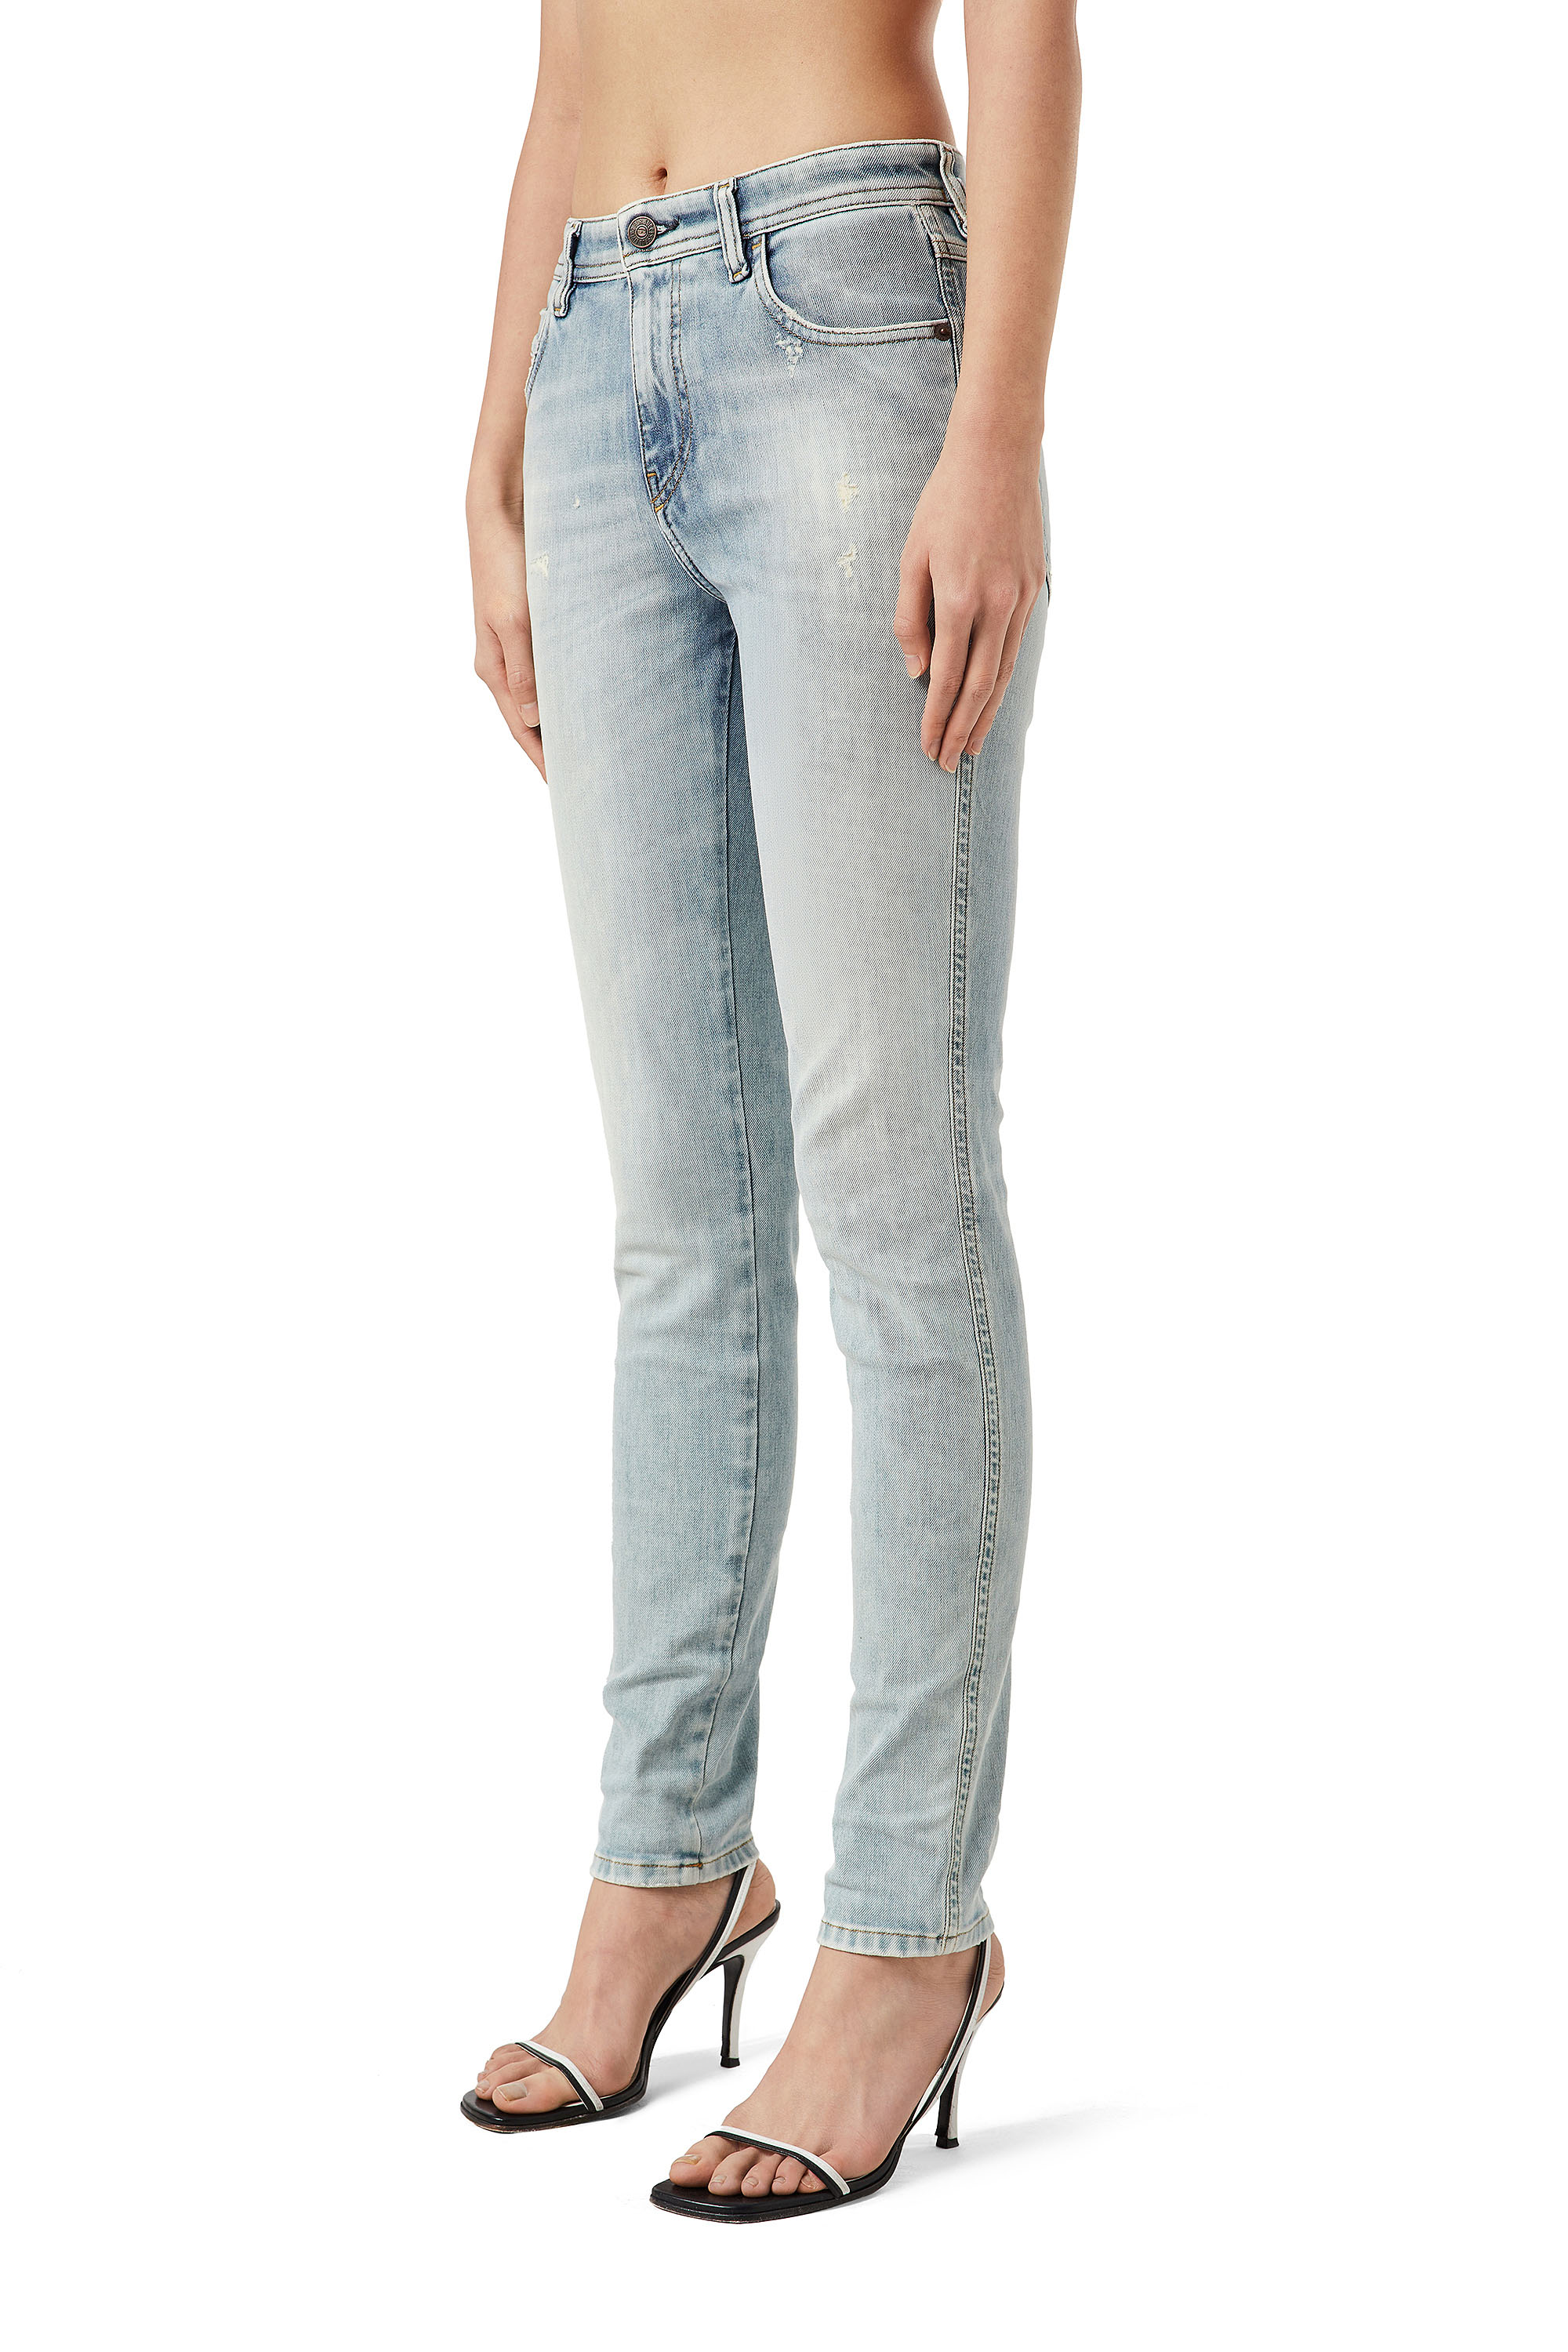 Womens Slim Jeans | Diesel Online Store